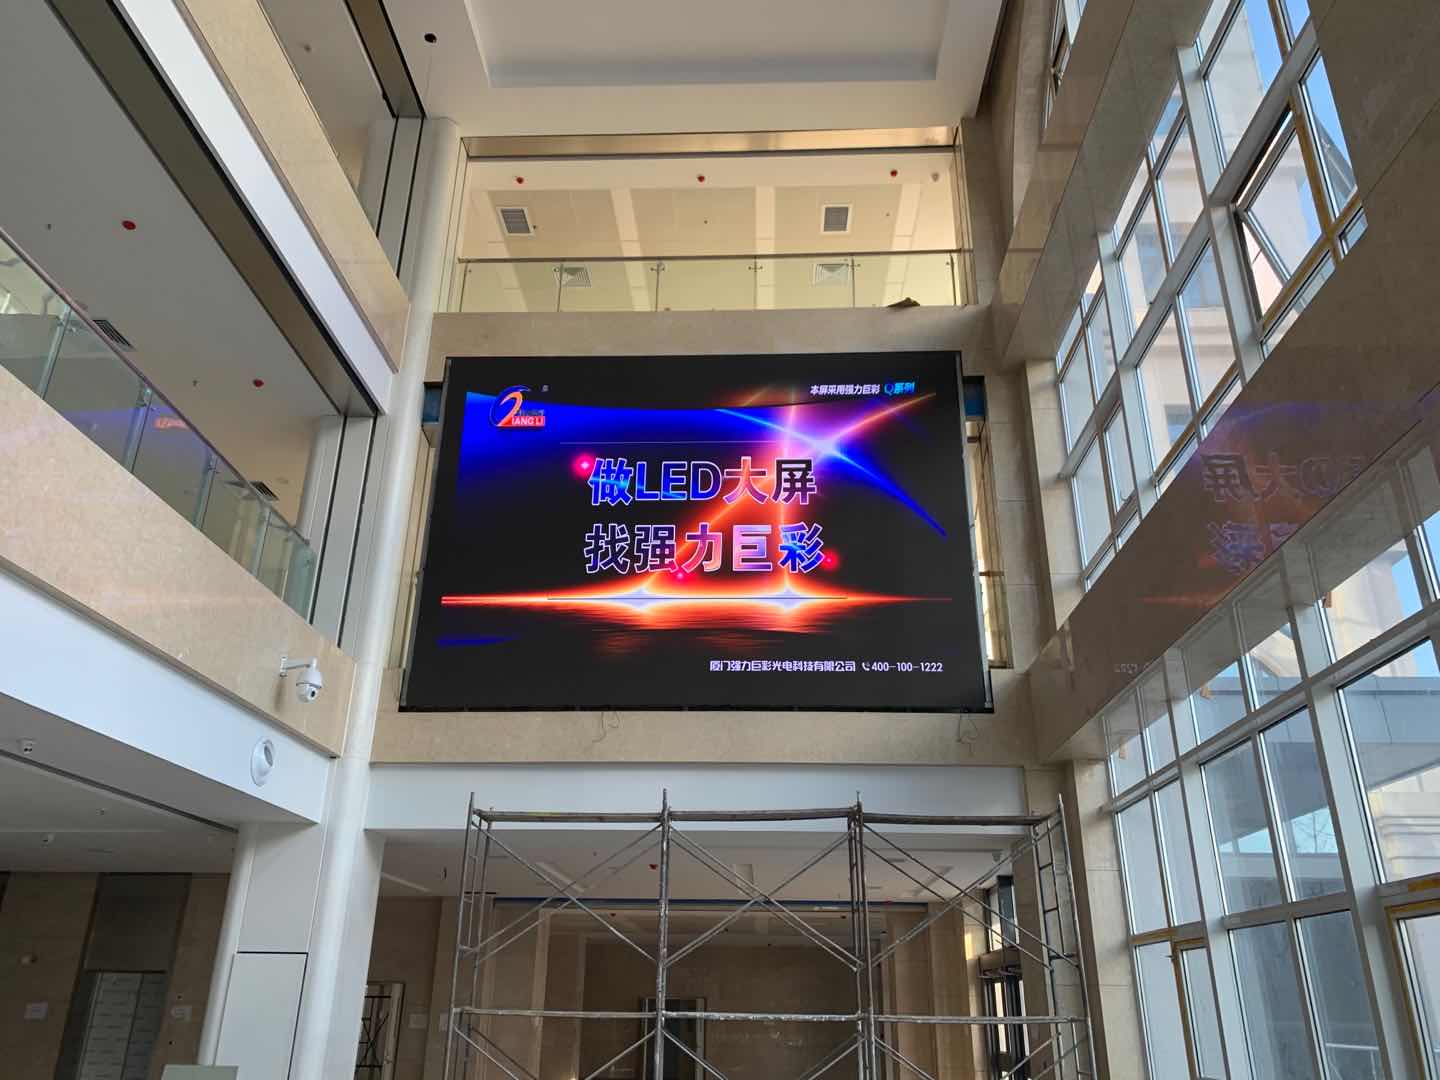 唐山某医院大厅26平米Q2.5室内全彩LED显示屏应用效果展示